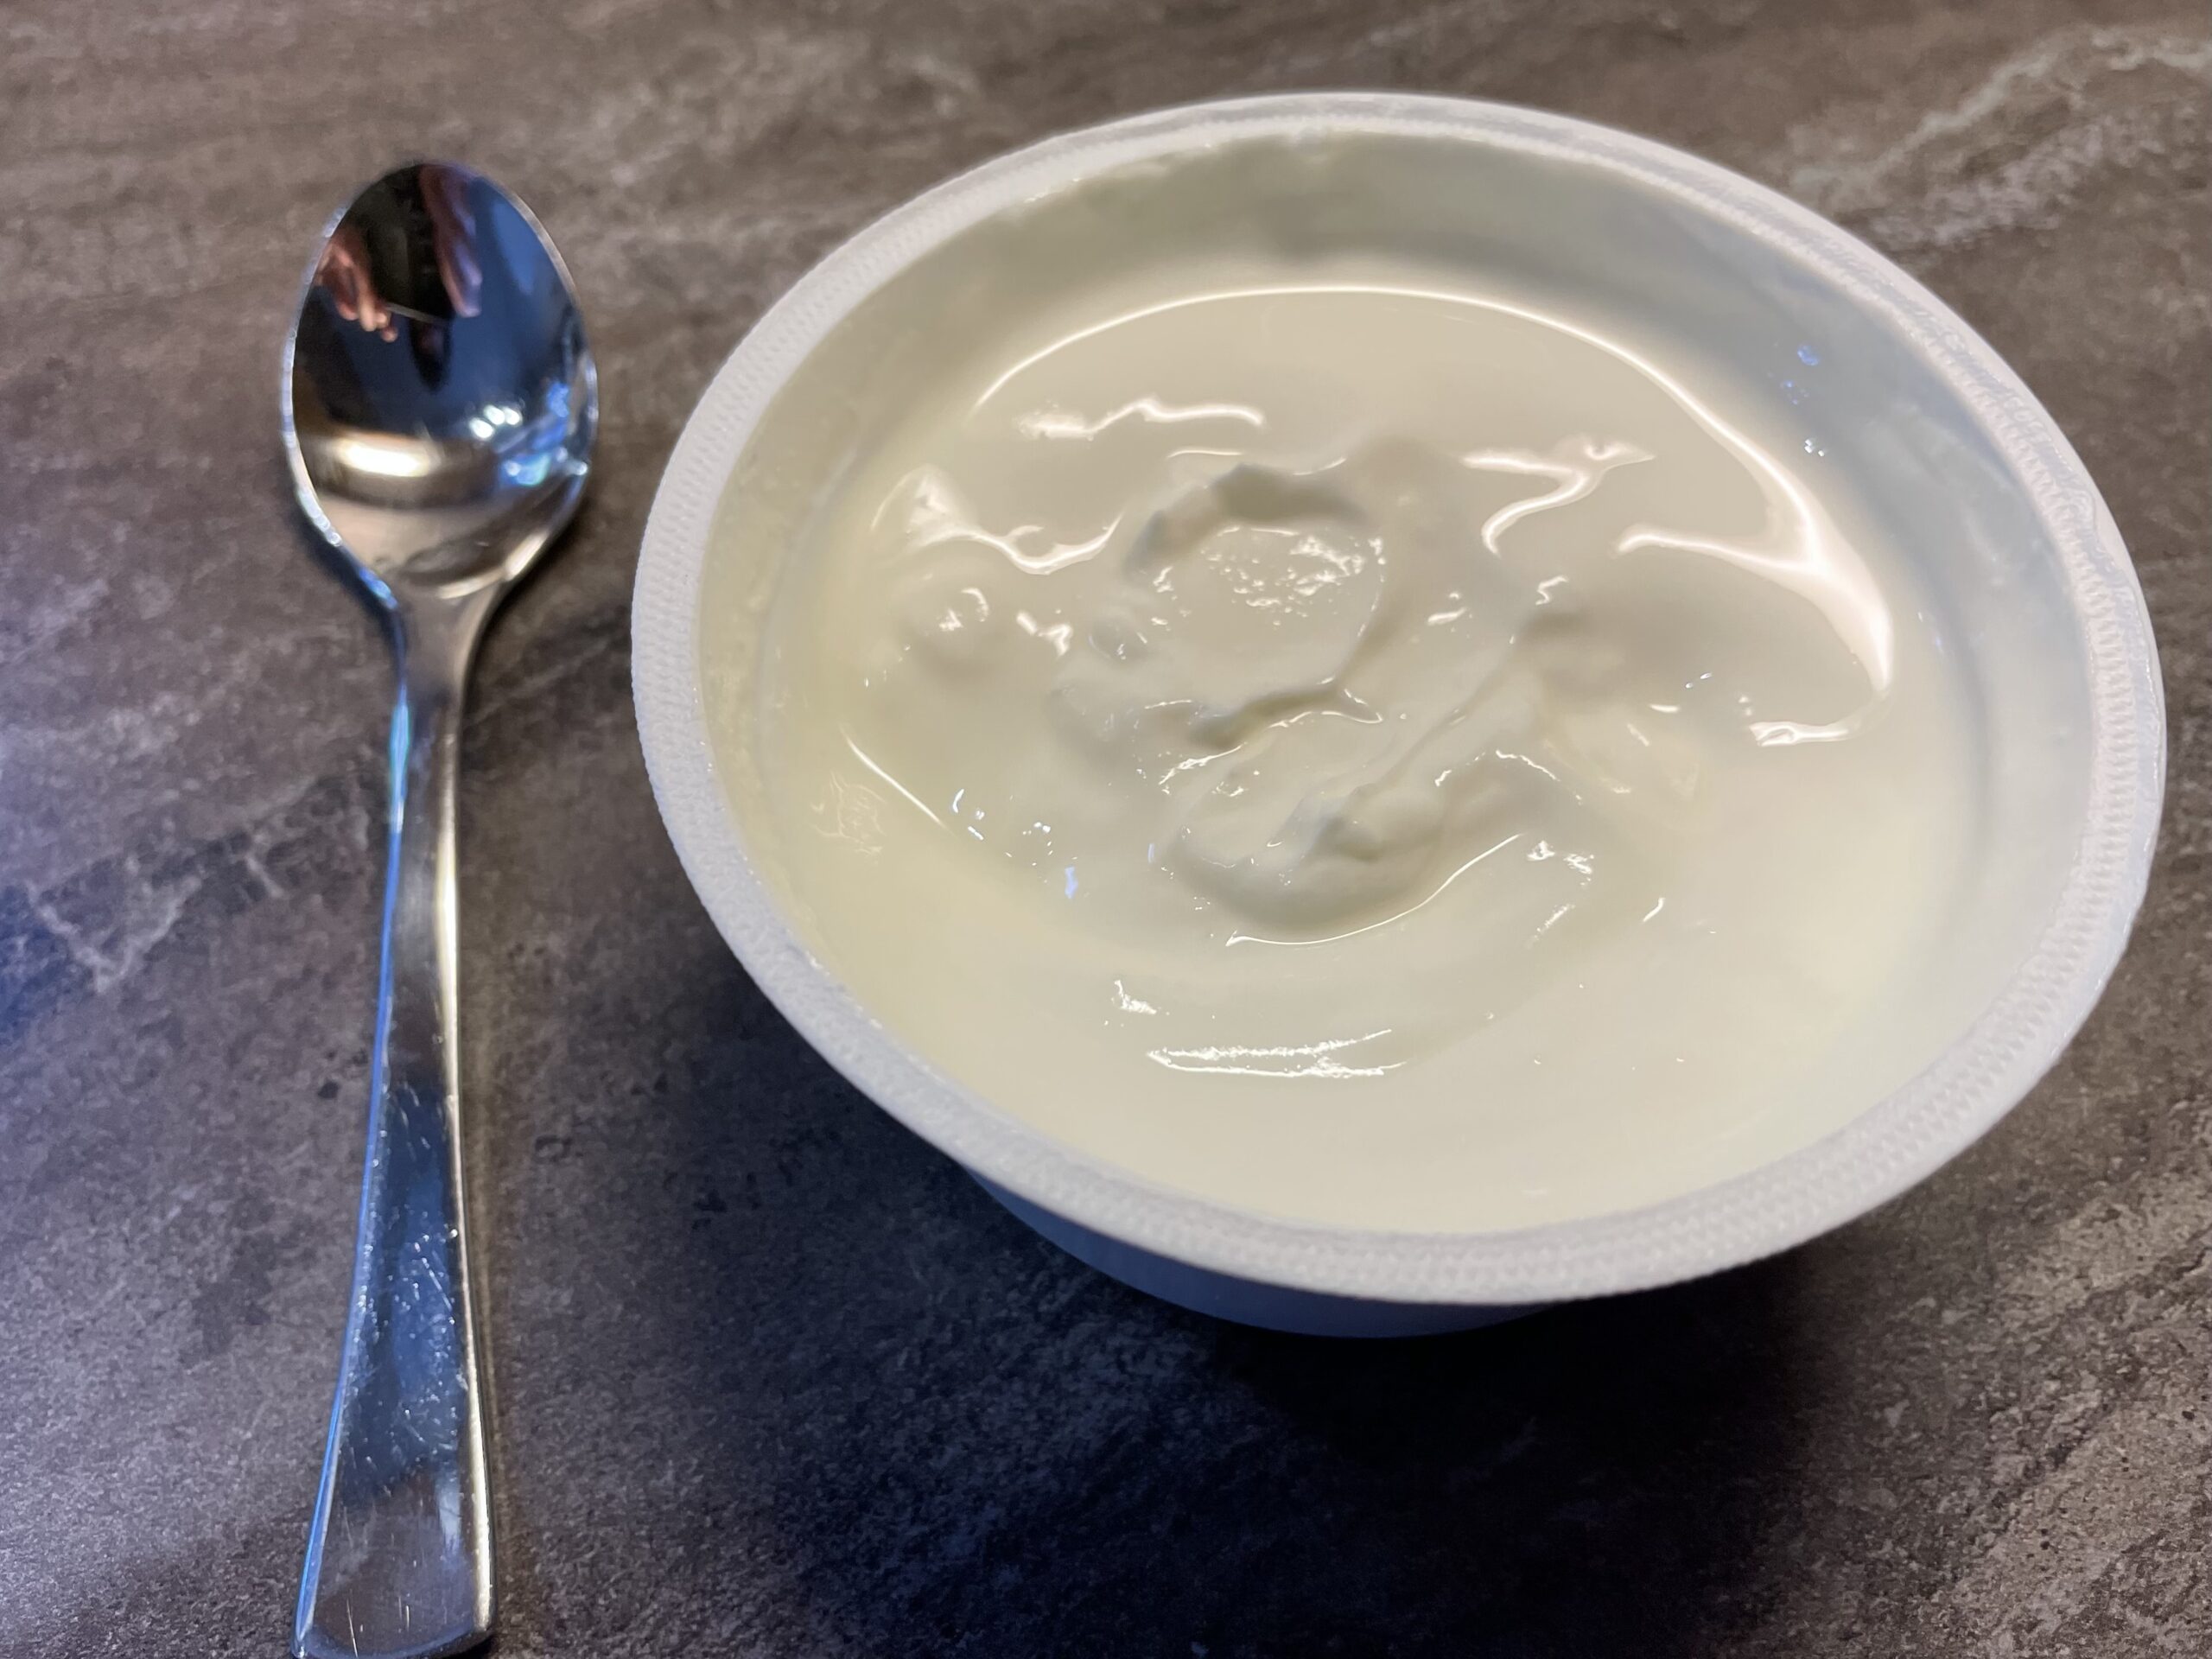 Bild zum Schritt 7 für das Bastel- und DIY-Abenteuer für Kinder: 'Ebenso brauchen wir einen cremigen Naturjoghurt.'